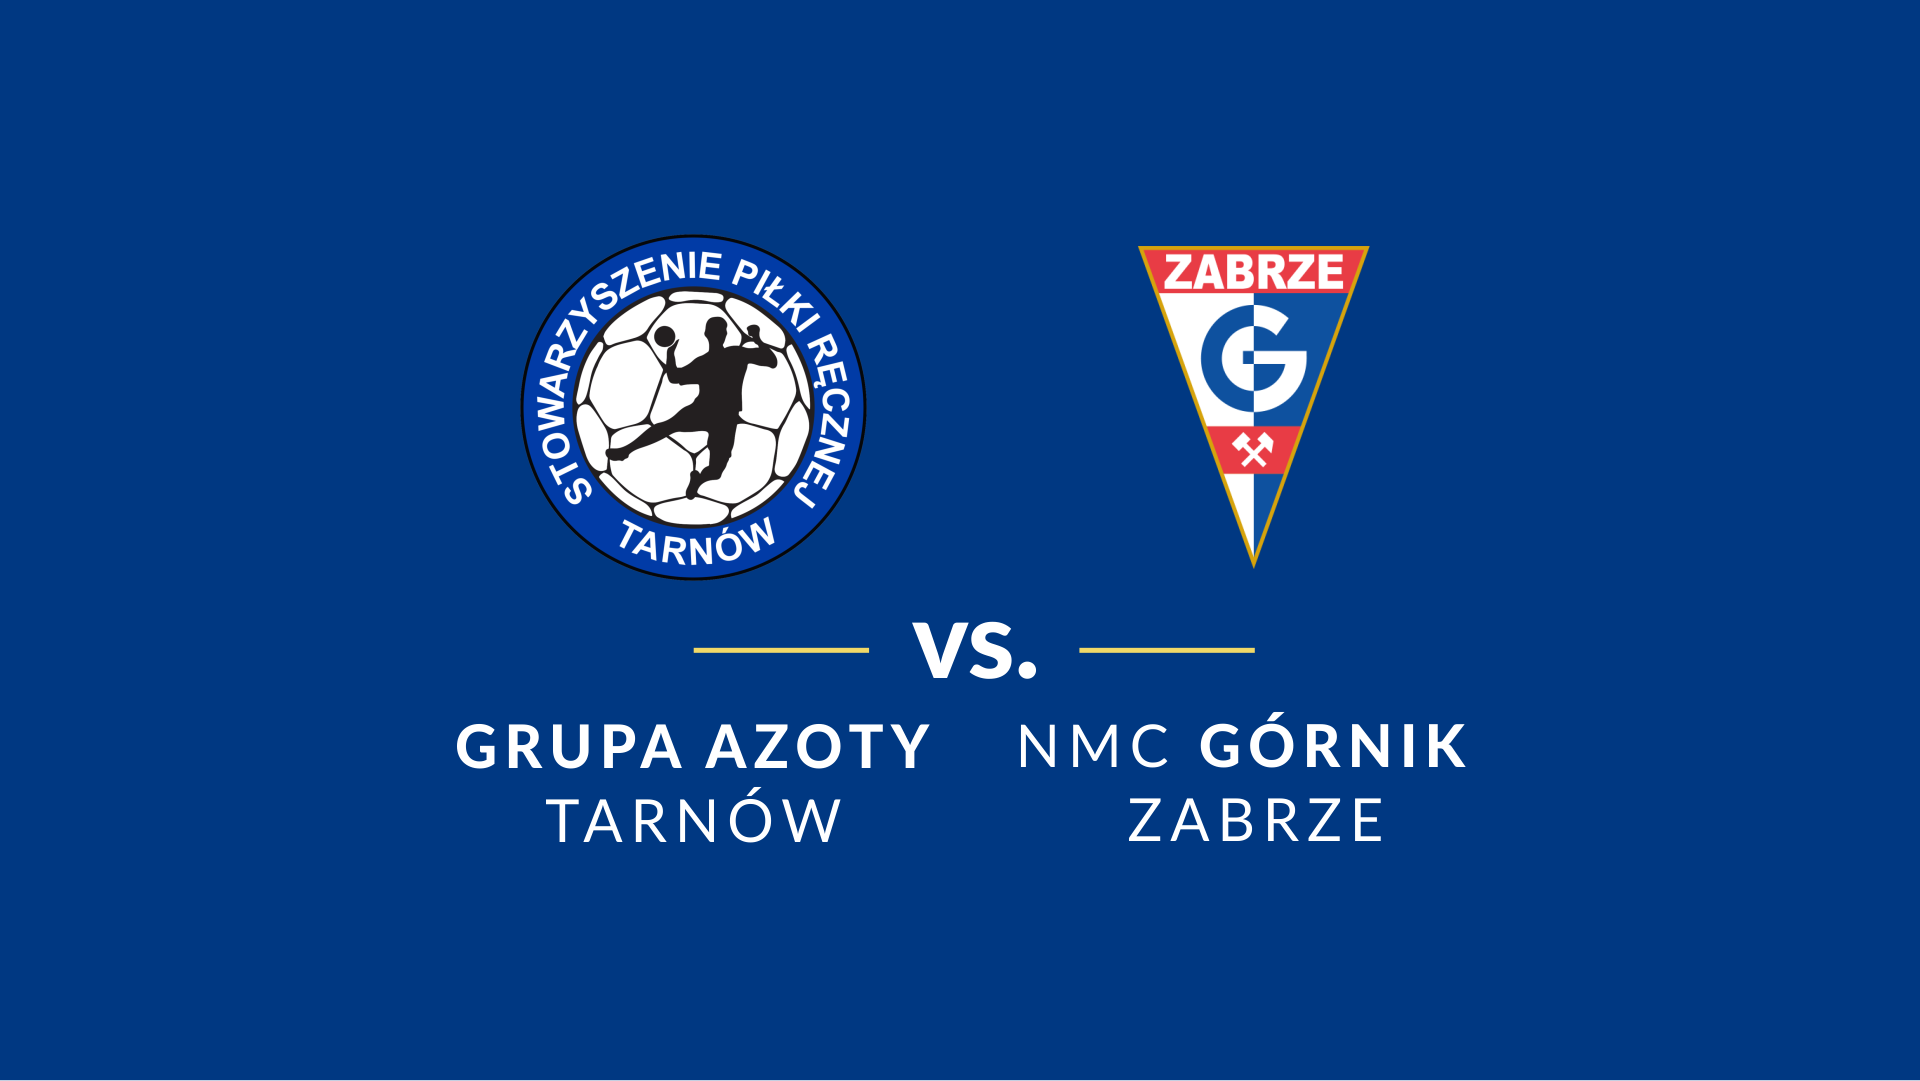 baner - logotypy Grupa Azoty Tarnów i NMC Górnik Zabrze